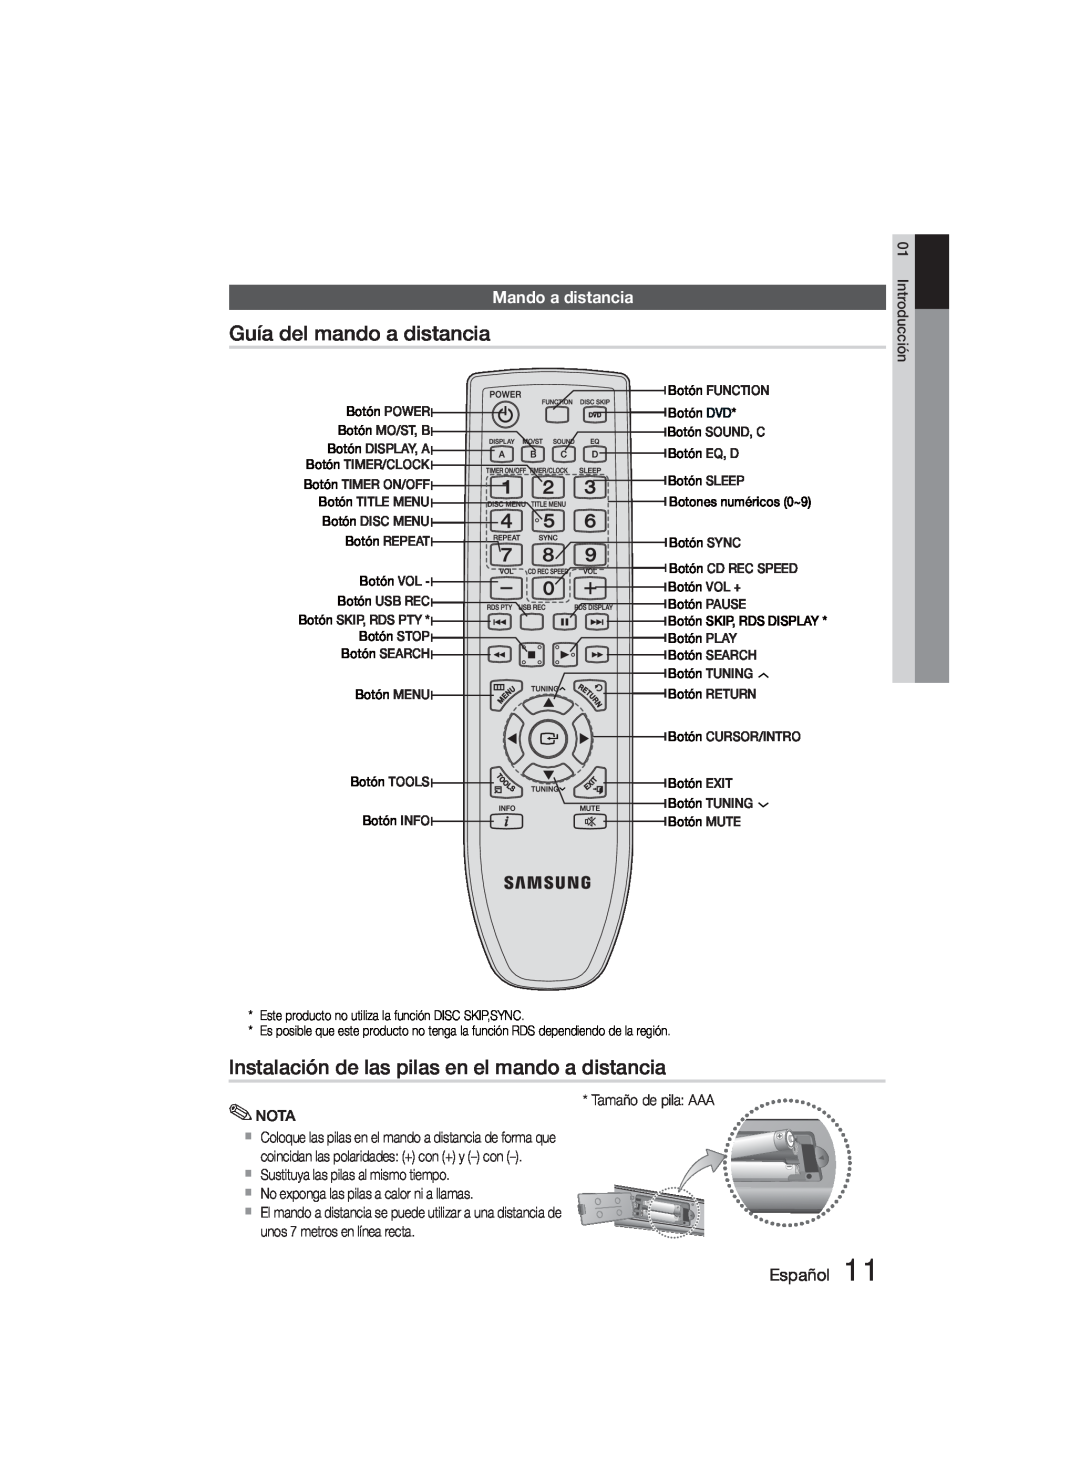 Samsung MM-D330D/ZF manual Guía del mando a distancia, Instalación de las pilas en el mando a distancia, Mando a distancia 